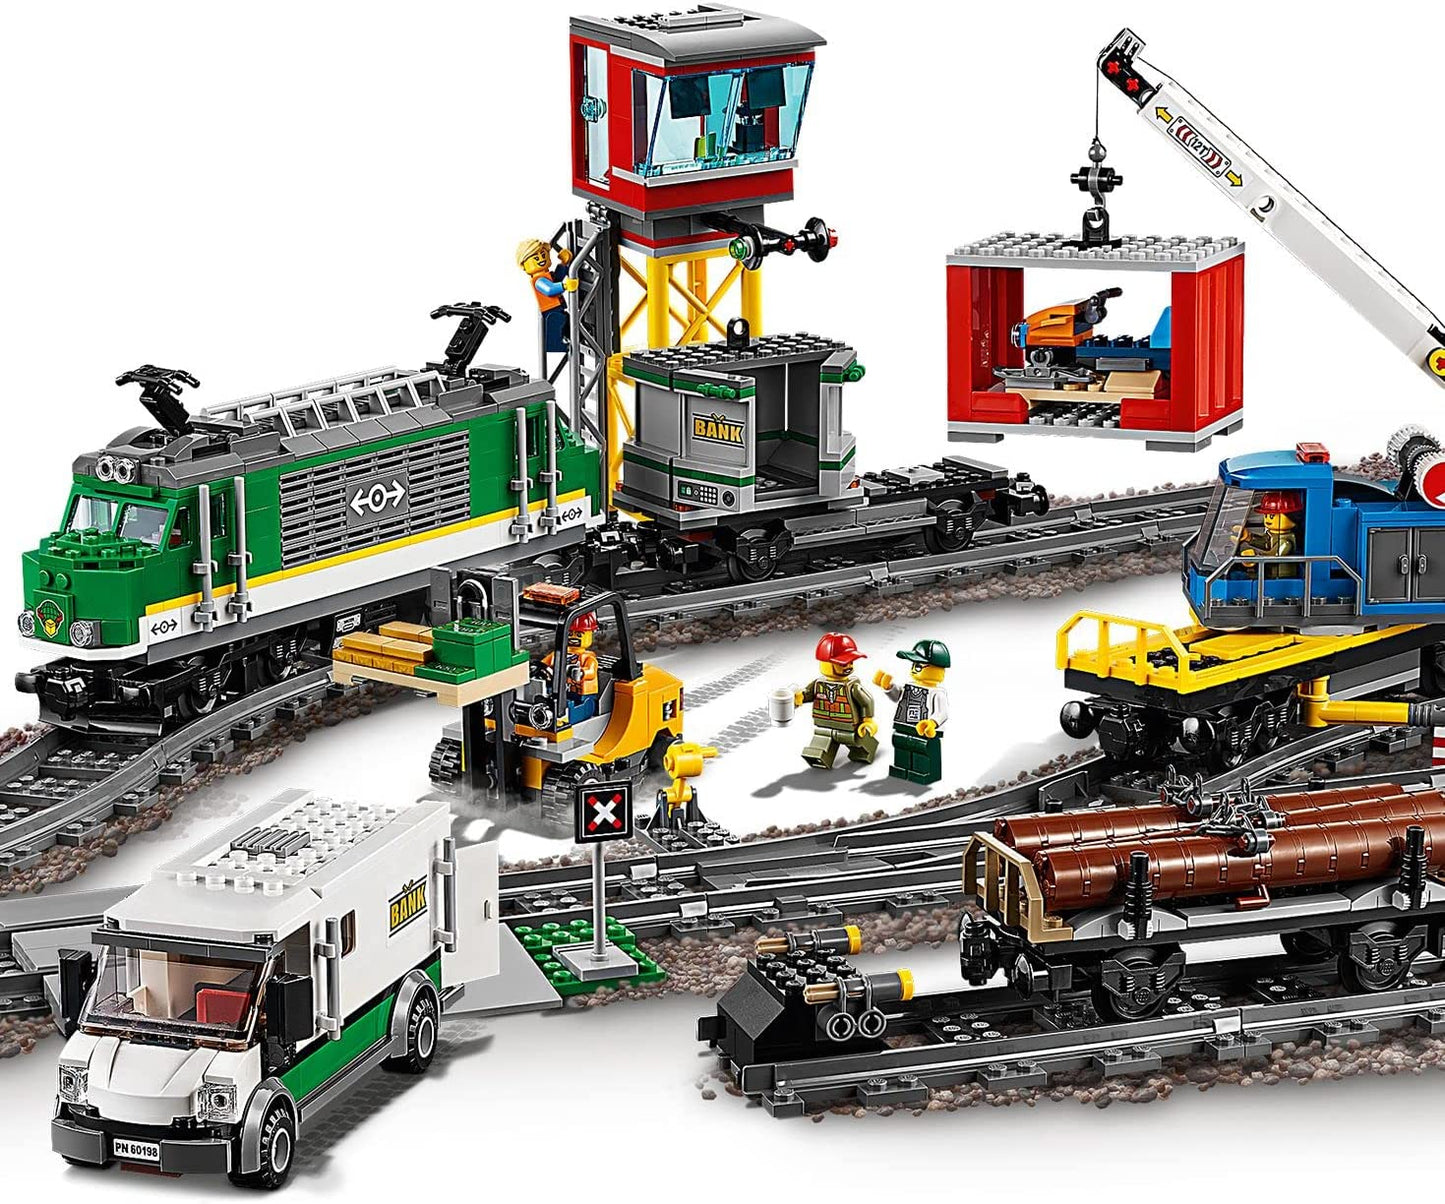 LEGO City - Cargo Train Remote Control Train 60198